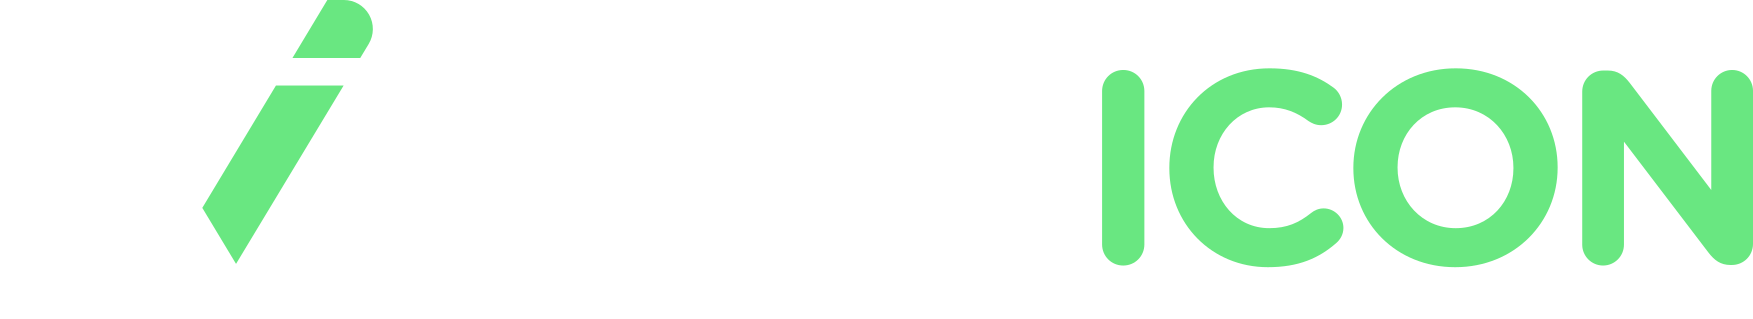 flaticon logo